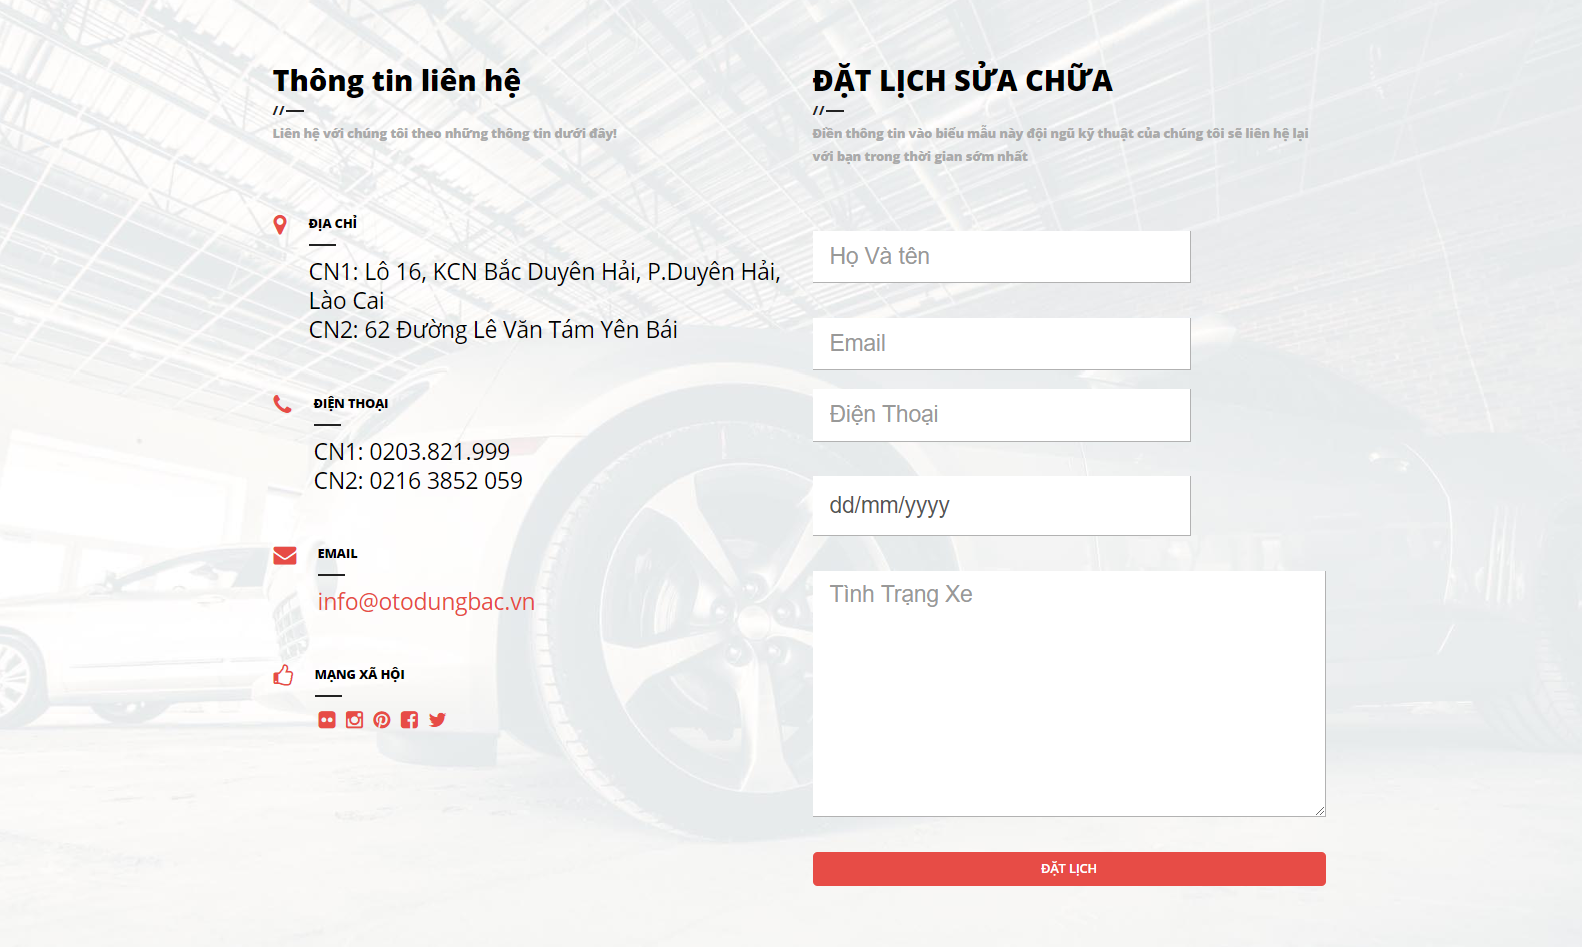 Trang thông tin liên hệ và đặt lịch sửa chữa của ô tô Dung Bắc